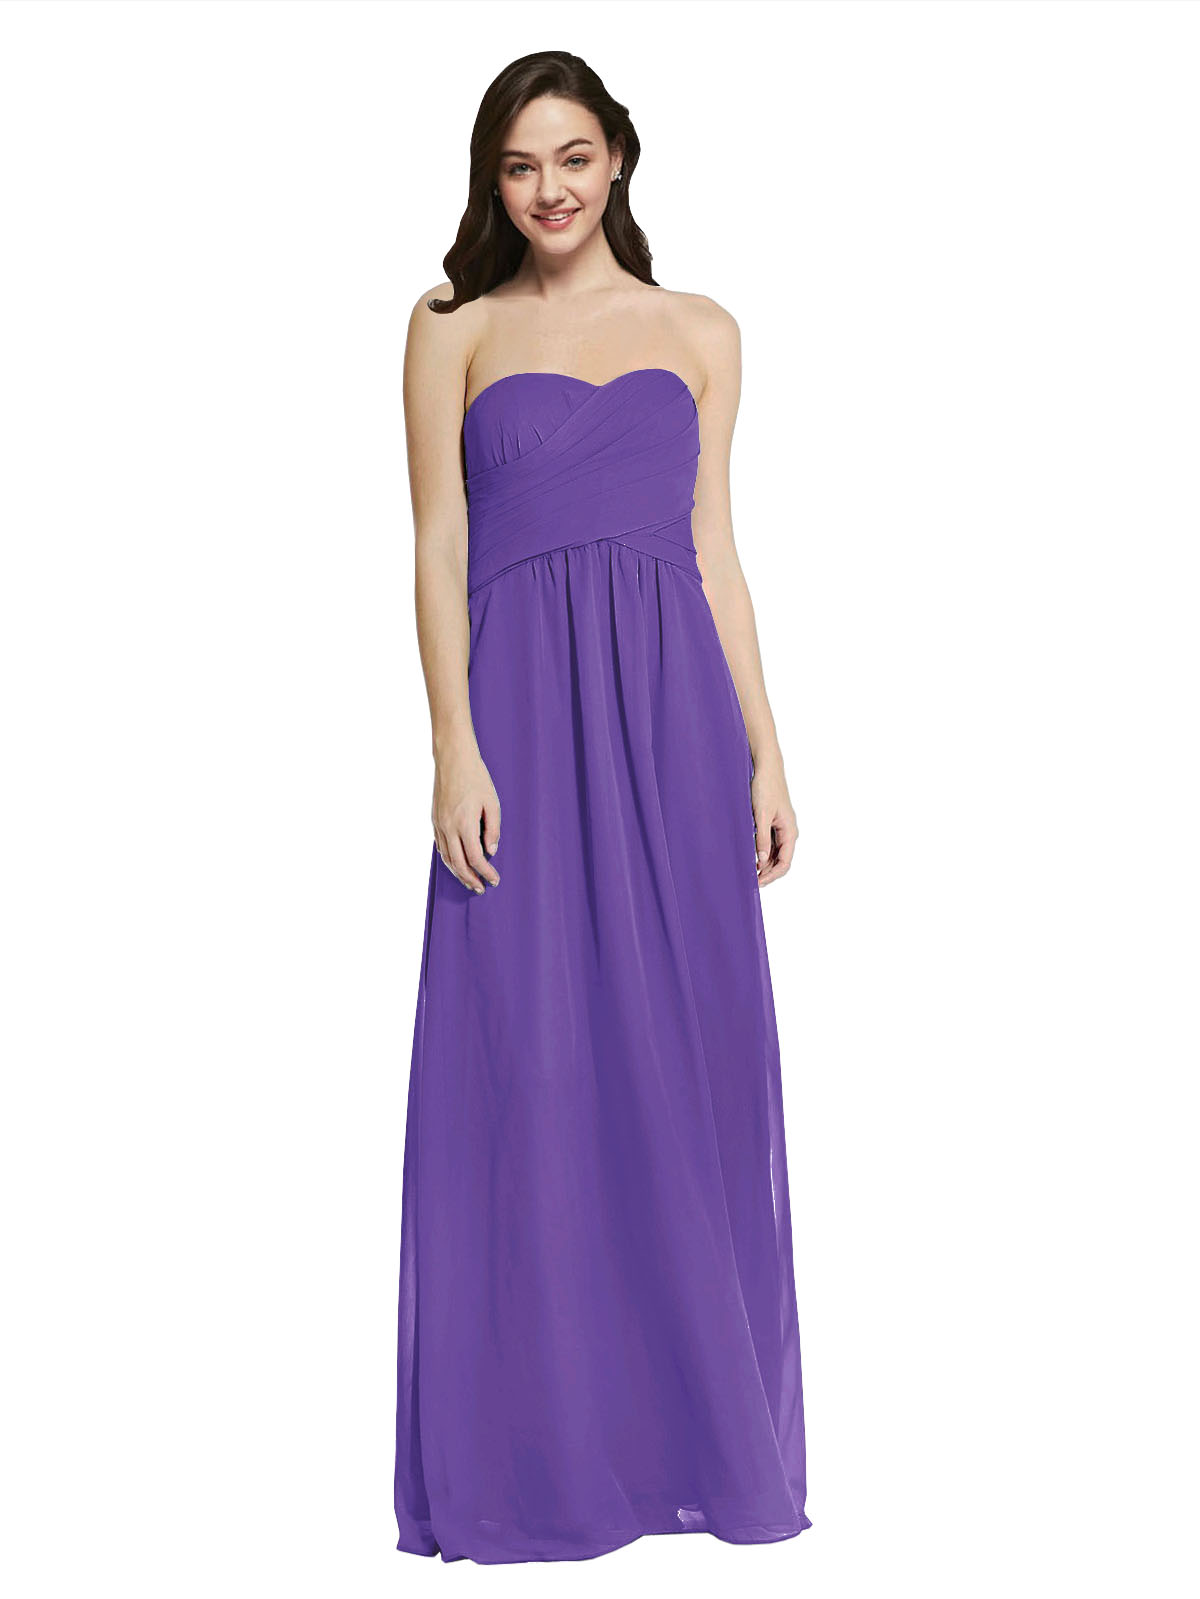 Long A-Line Strapless Sweetheart Sleeveless Purple Chiffon Bridesmaid Dress Jenner